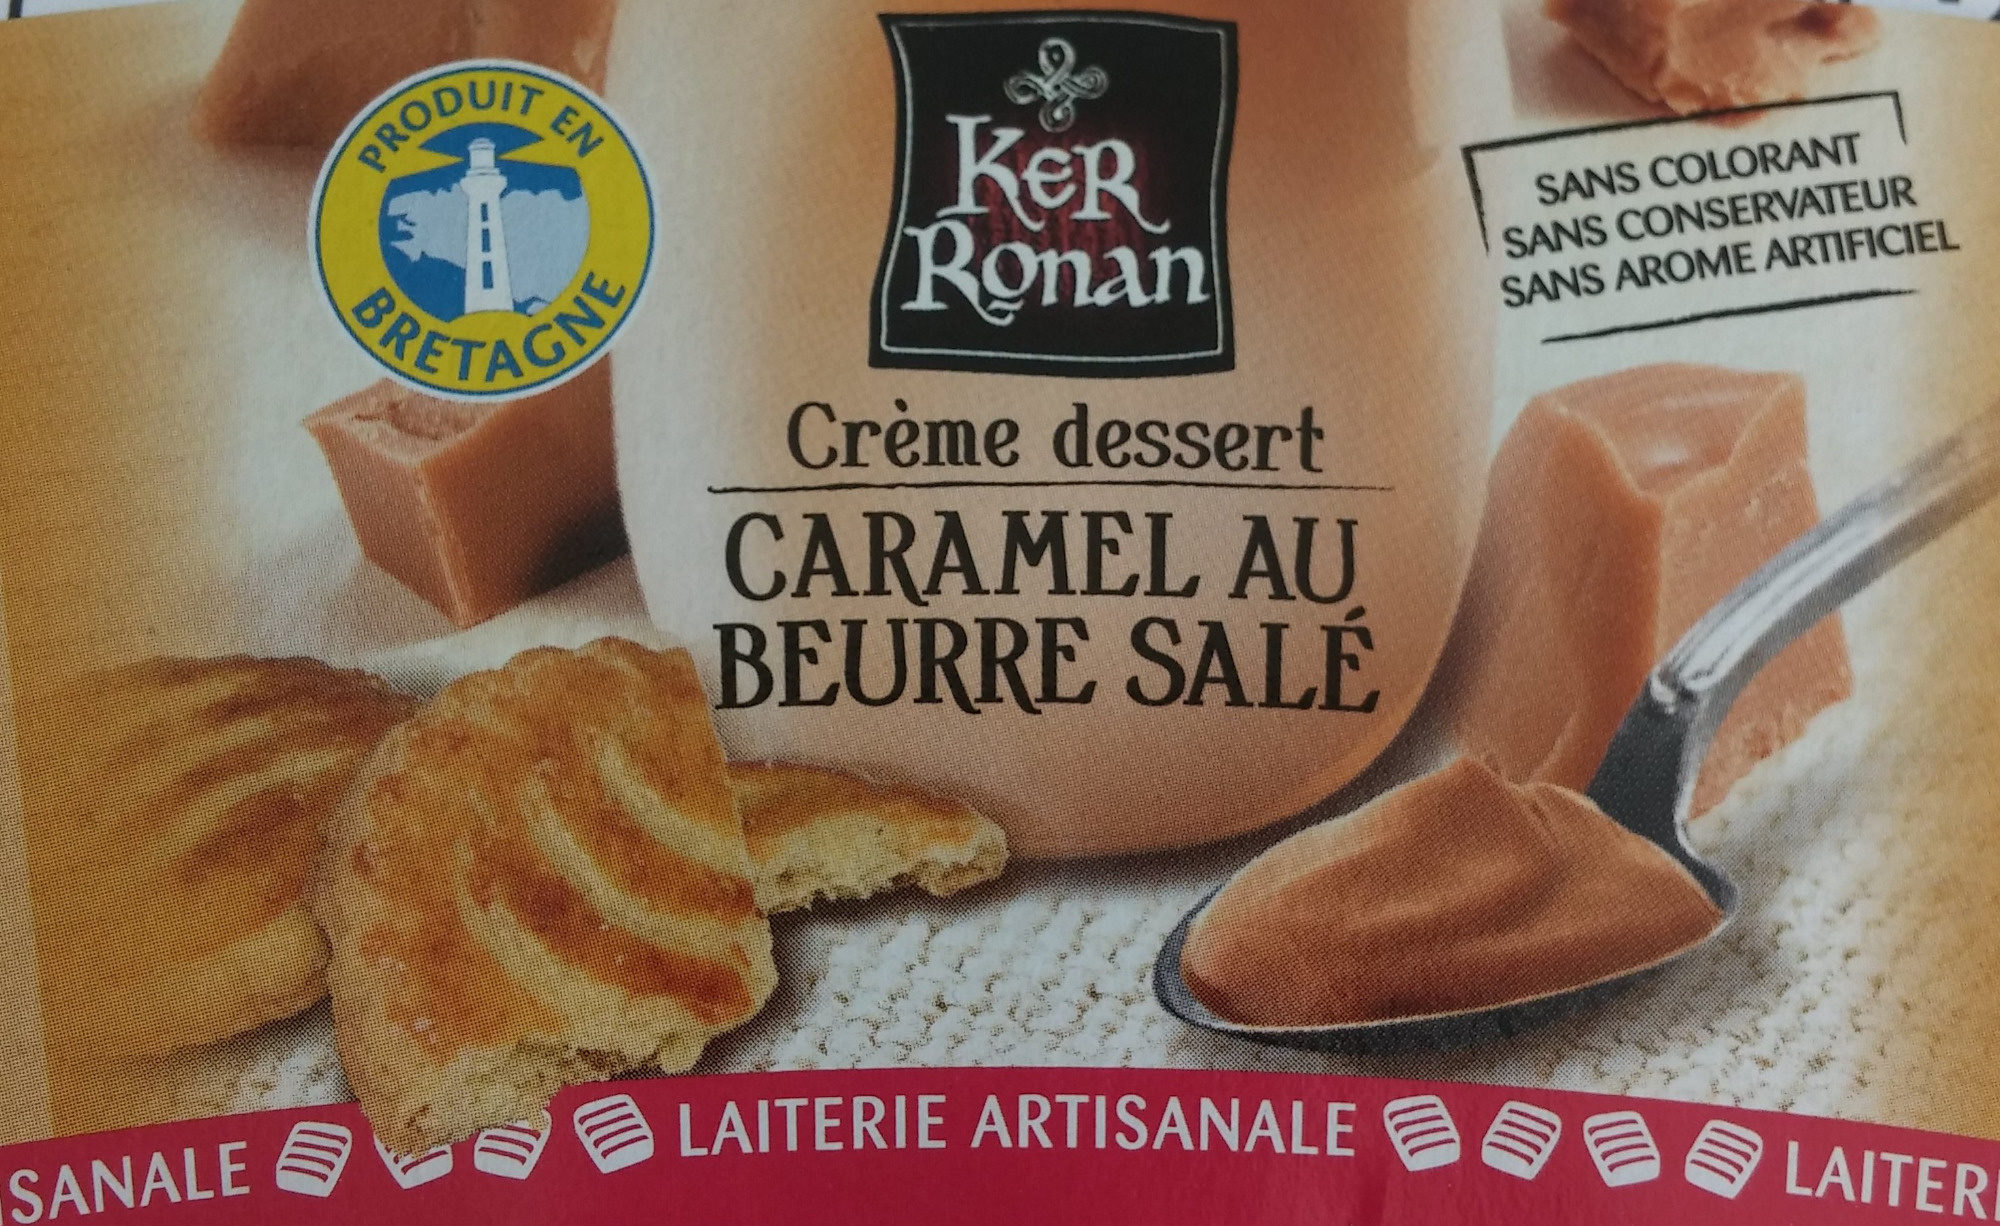 Crème dessert Caramel au beurre salé (et sa Galette bretonne) - Product - fr